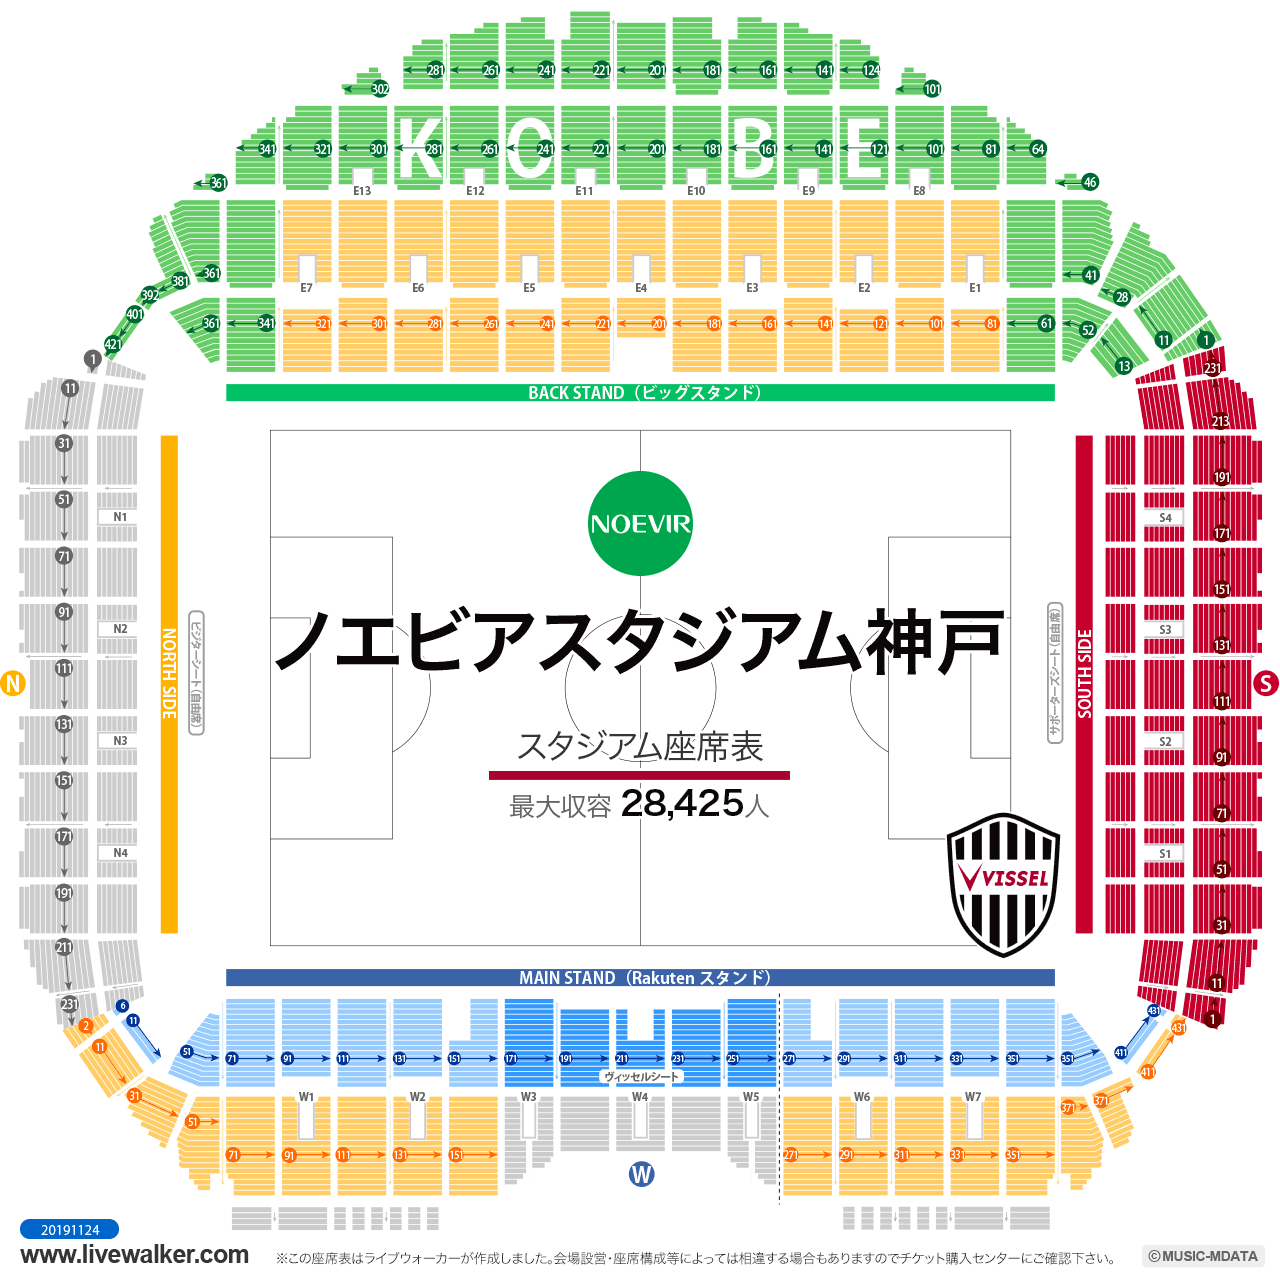 ノエビアスタジアム神戸スタジアムの座席表